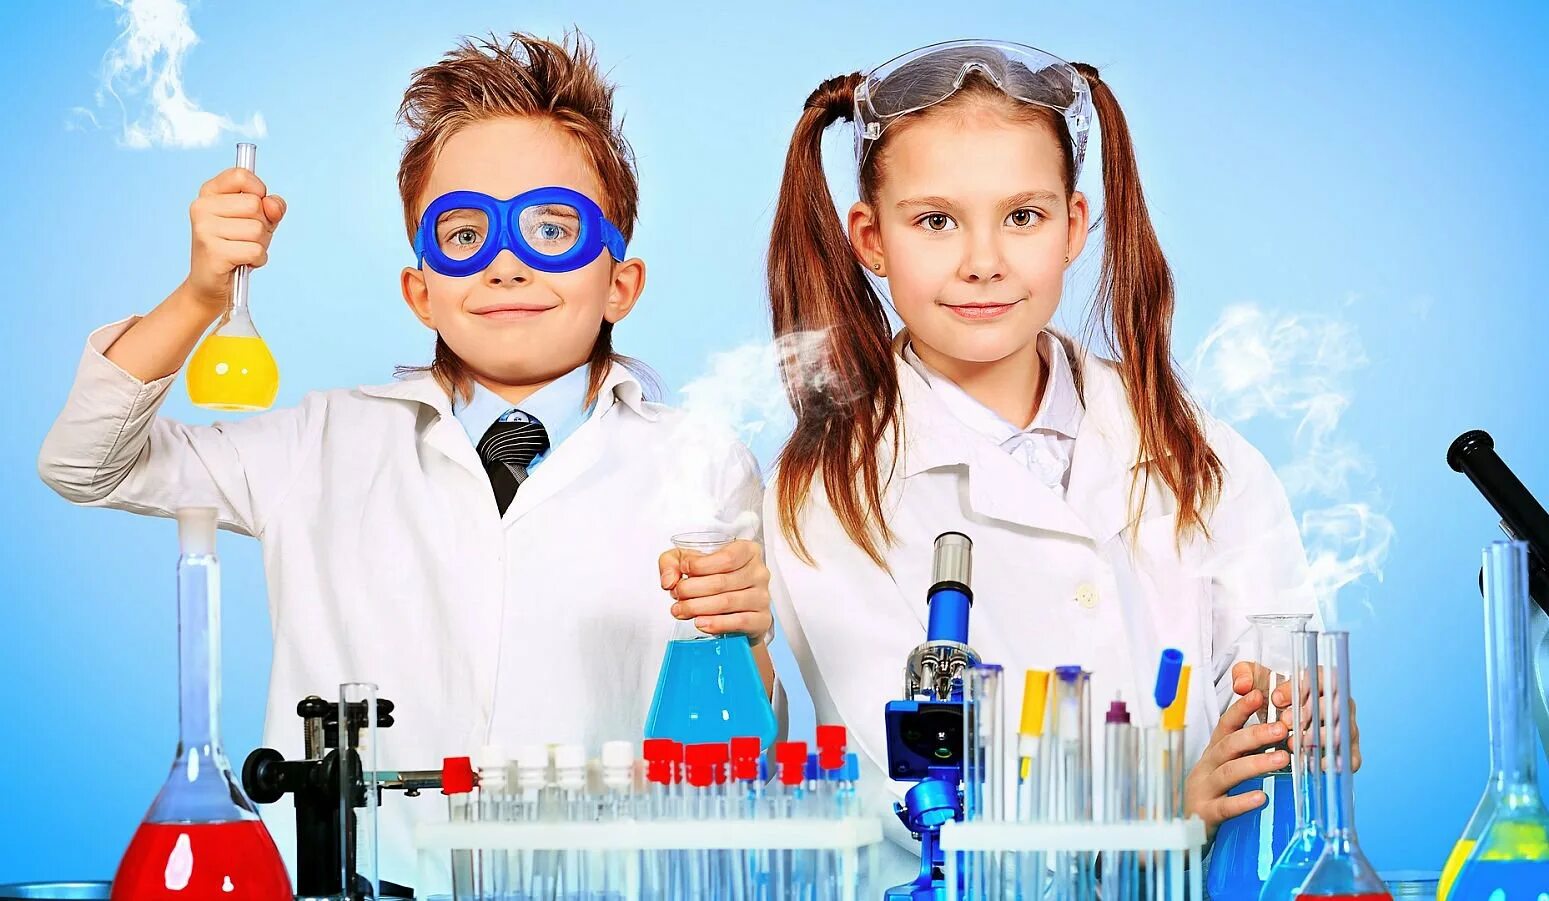 Лаборатория развлечений. Химические опыты для детей. Научная лаборатория для детей. Химические эксперименты для детей. День детских изобретений.